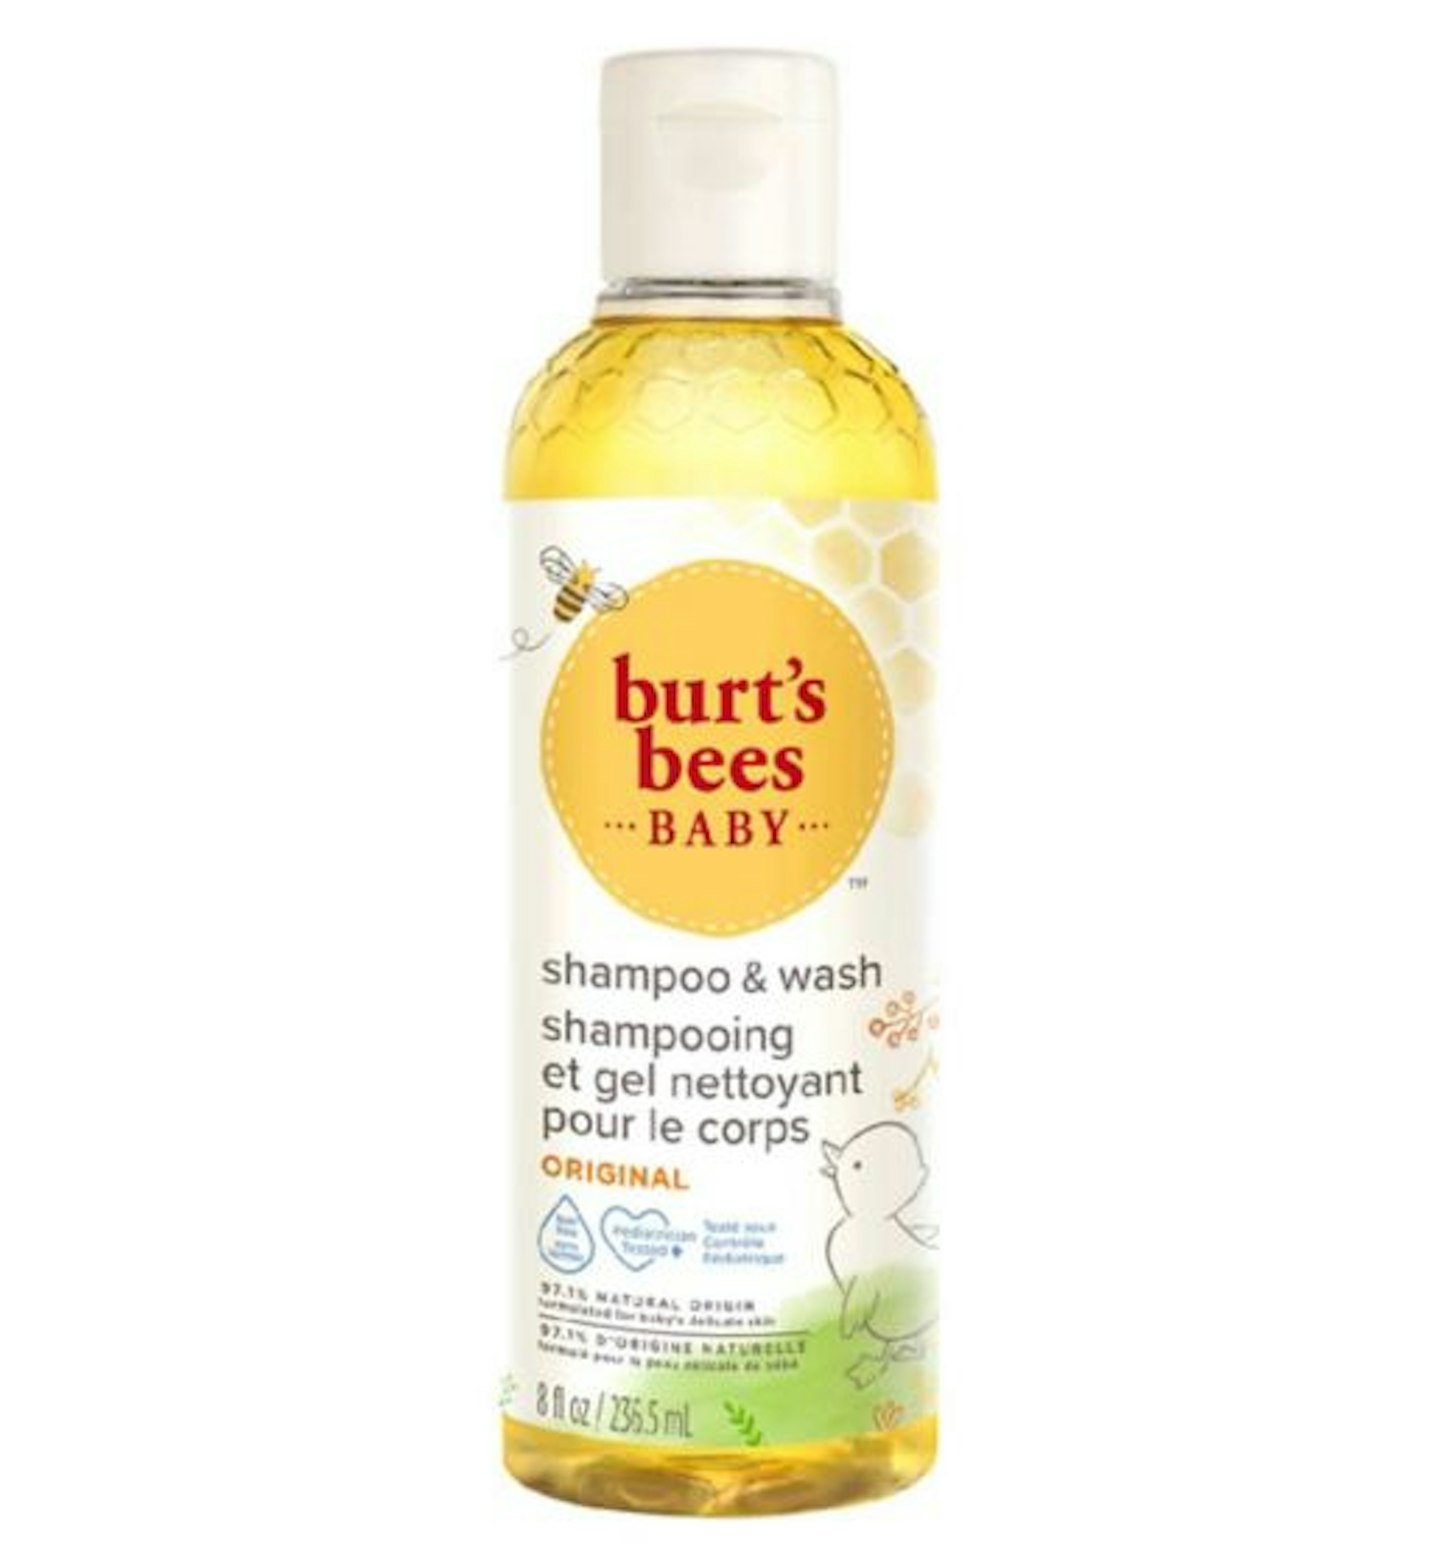 Burts Bees Baby Shampoo And Wash